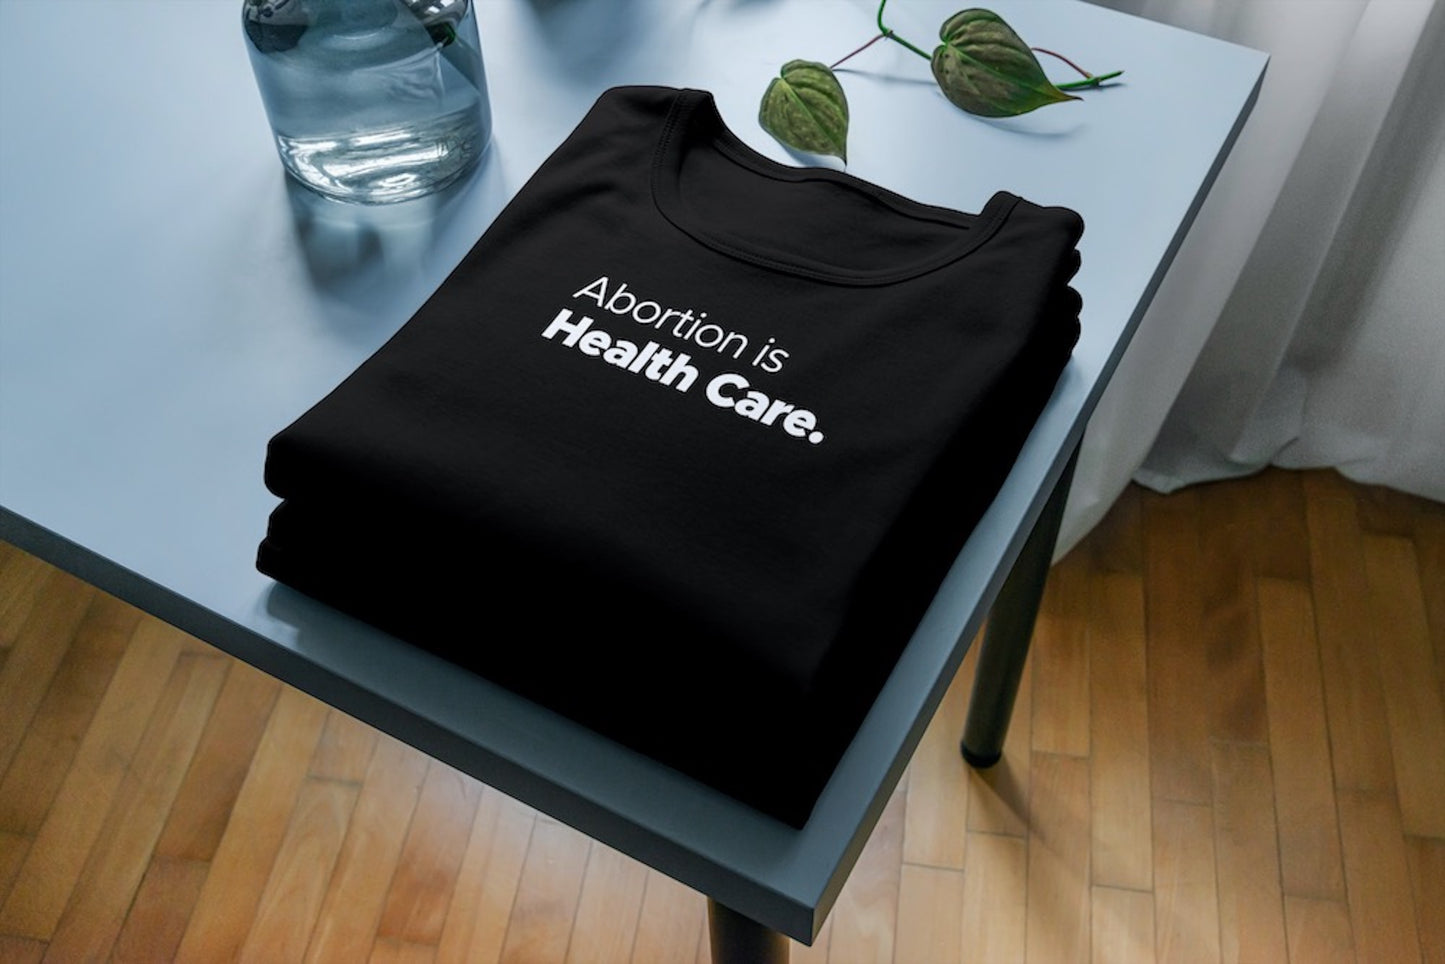 Tričko s krátkým rukávem Abortion is Health Care